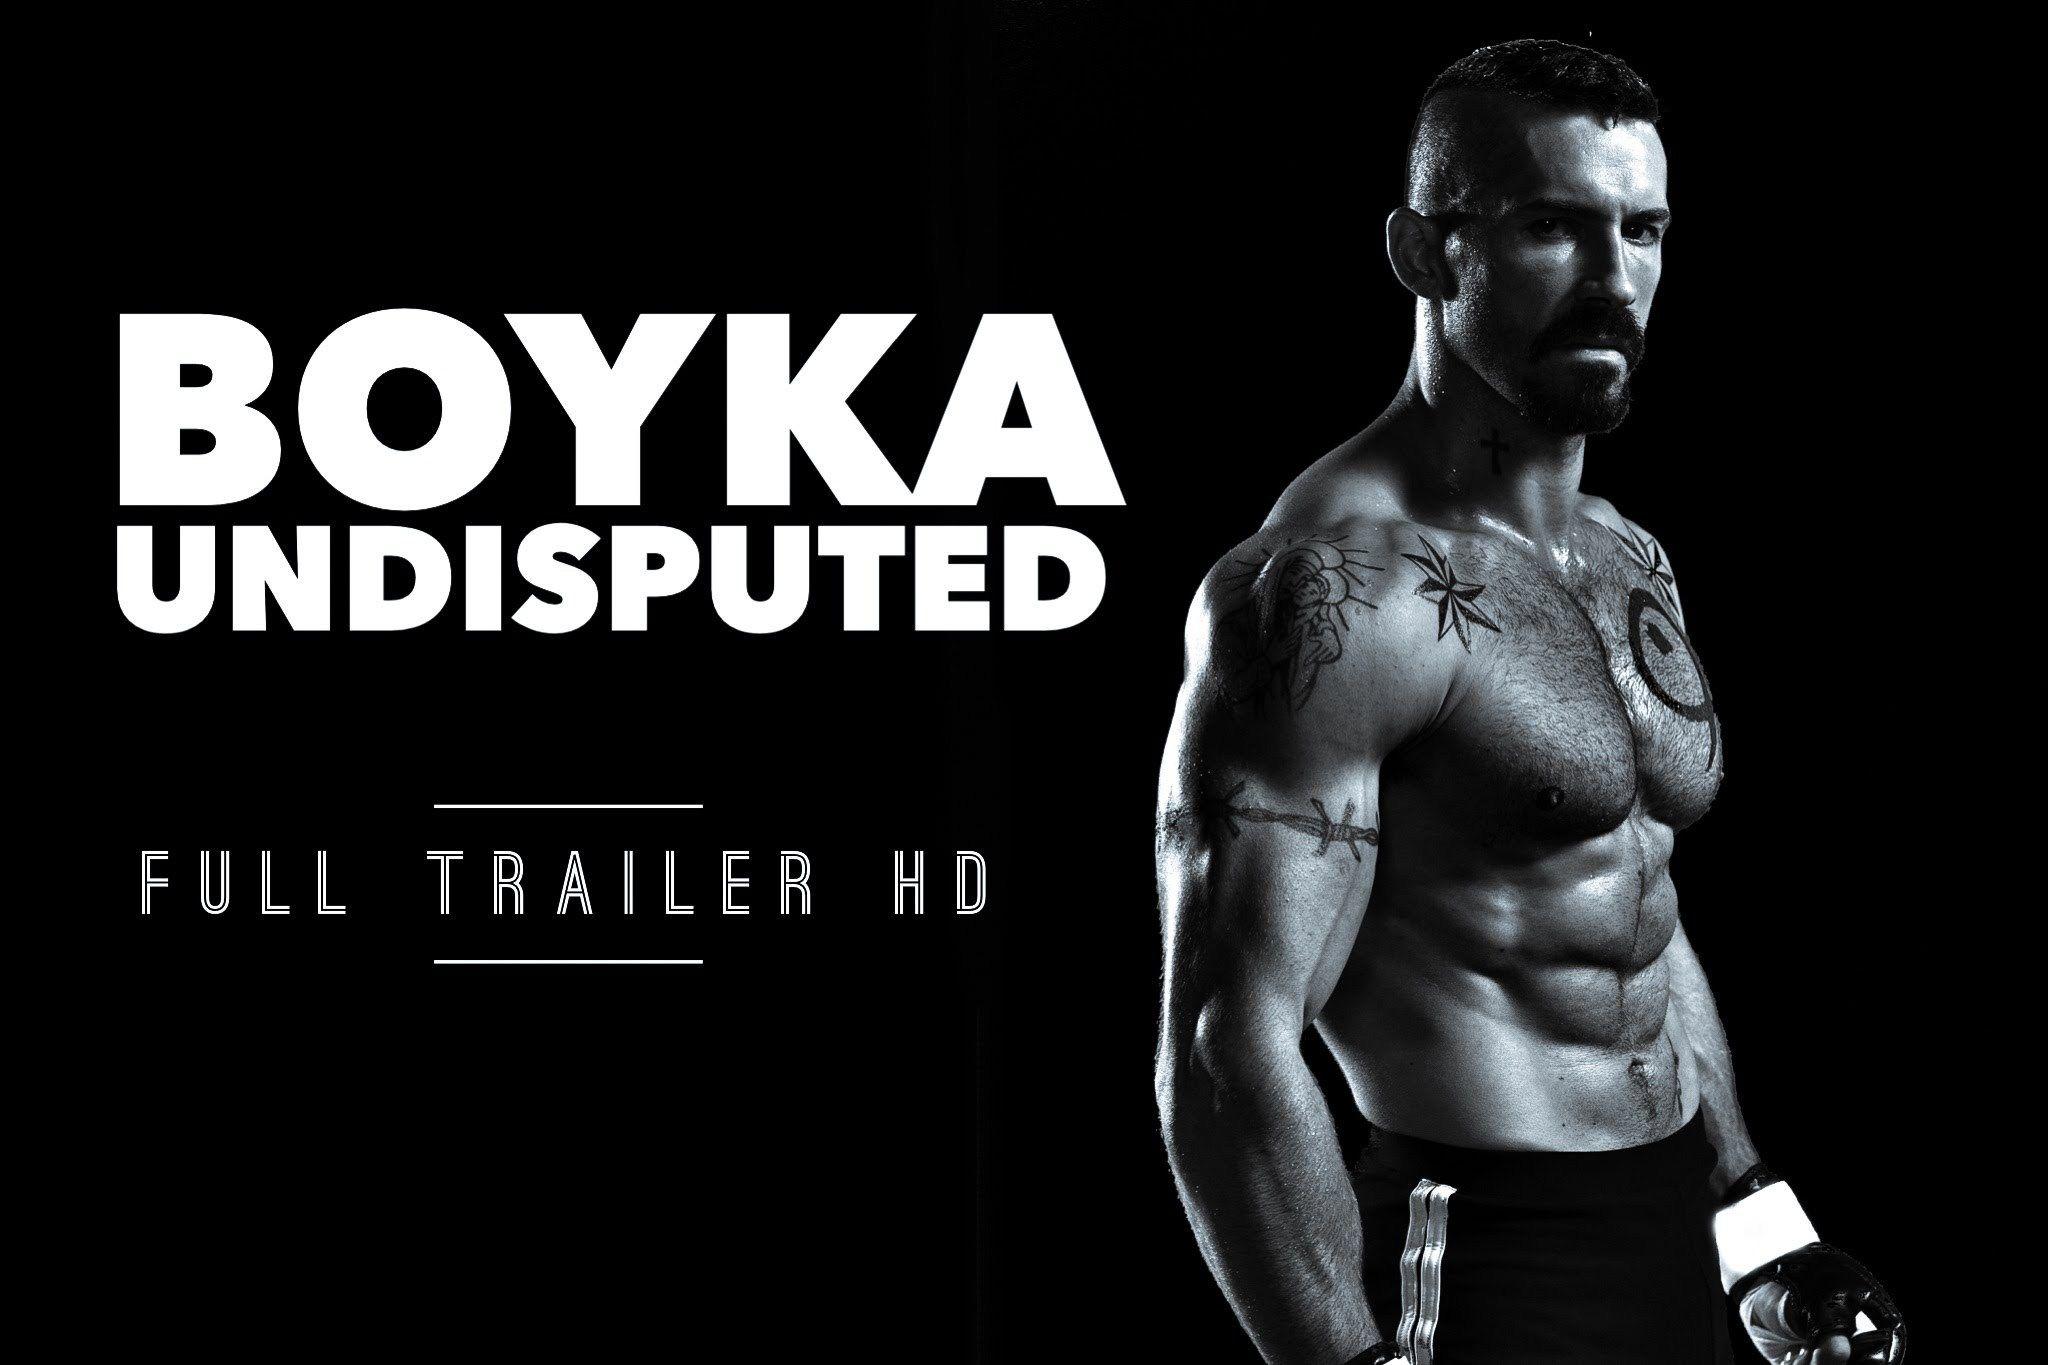 Boyka undisputed movie 2016